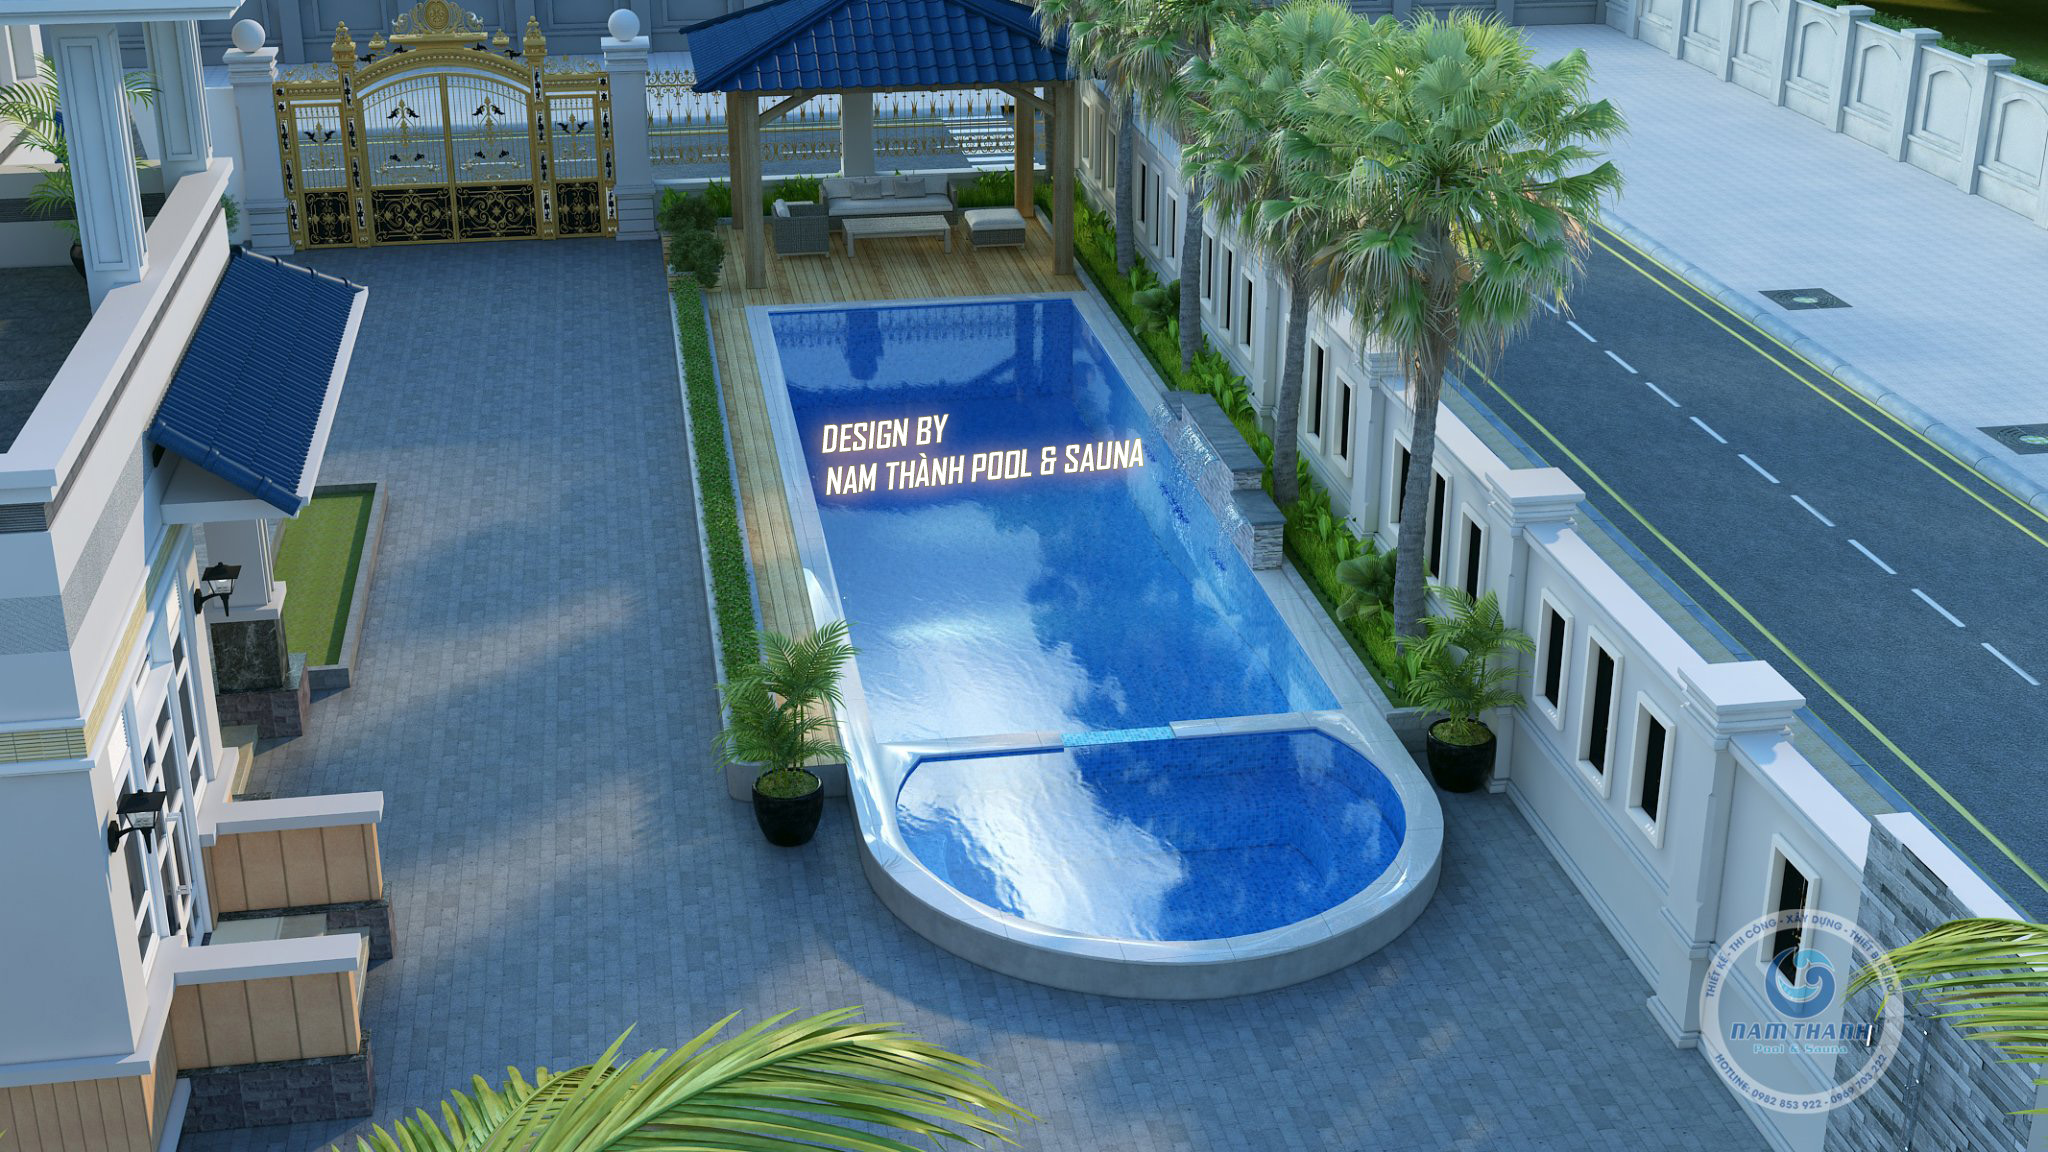 Một trong những thiết kế bể bơi biệt thự bởi Nam Thành